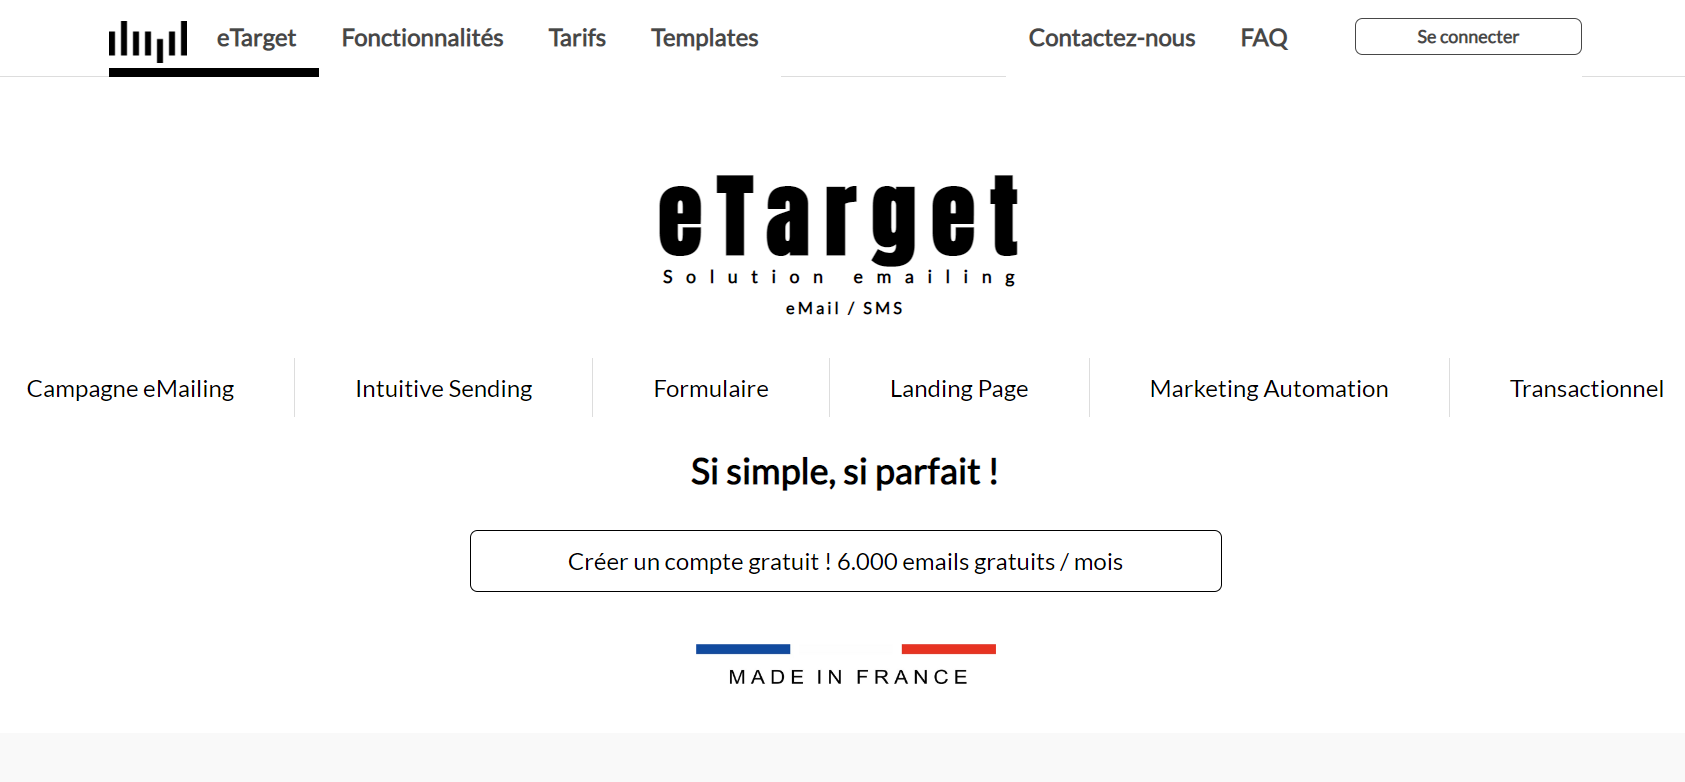 eTarget - Logiciel pour créer une newsletter gratuitement